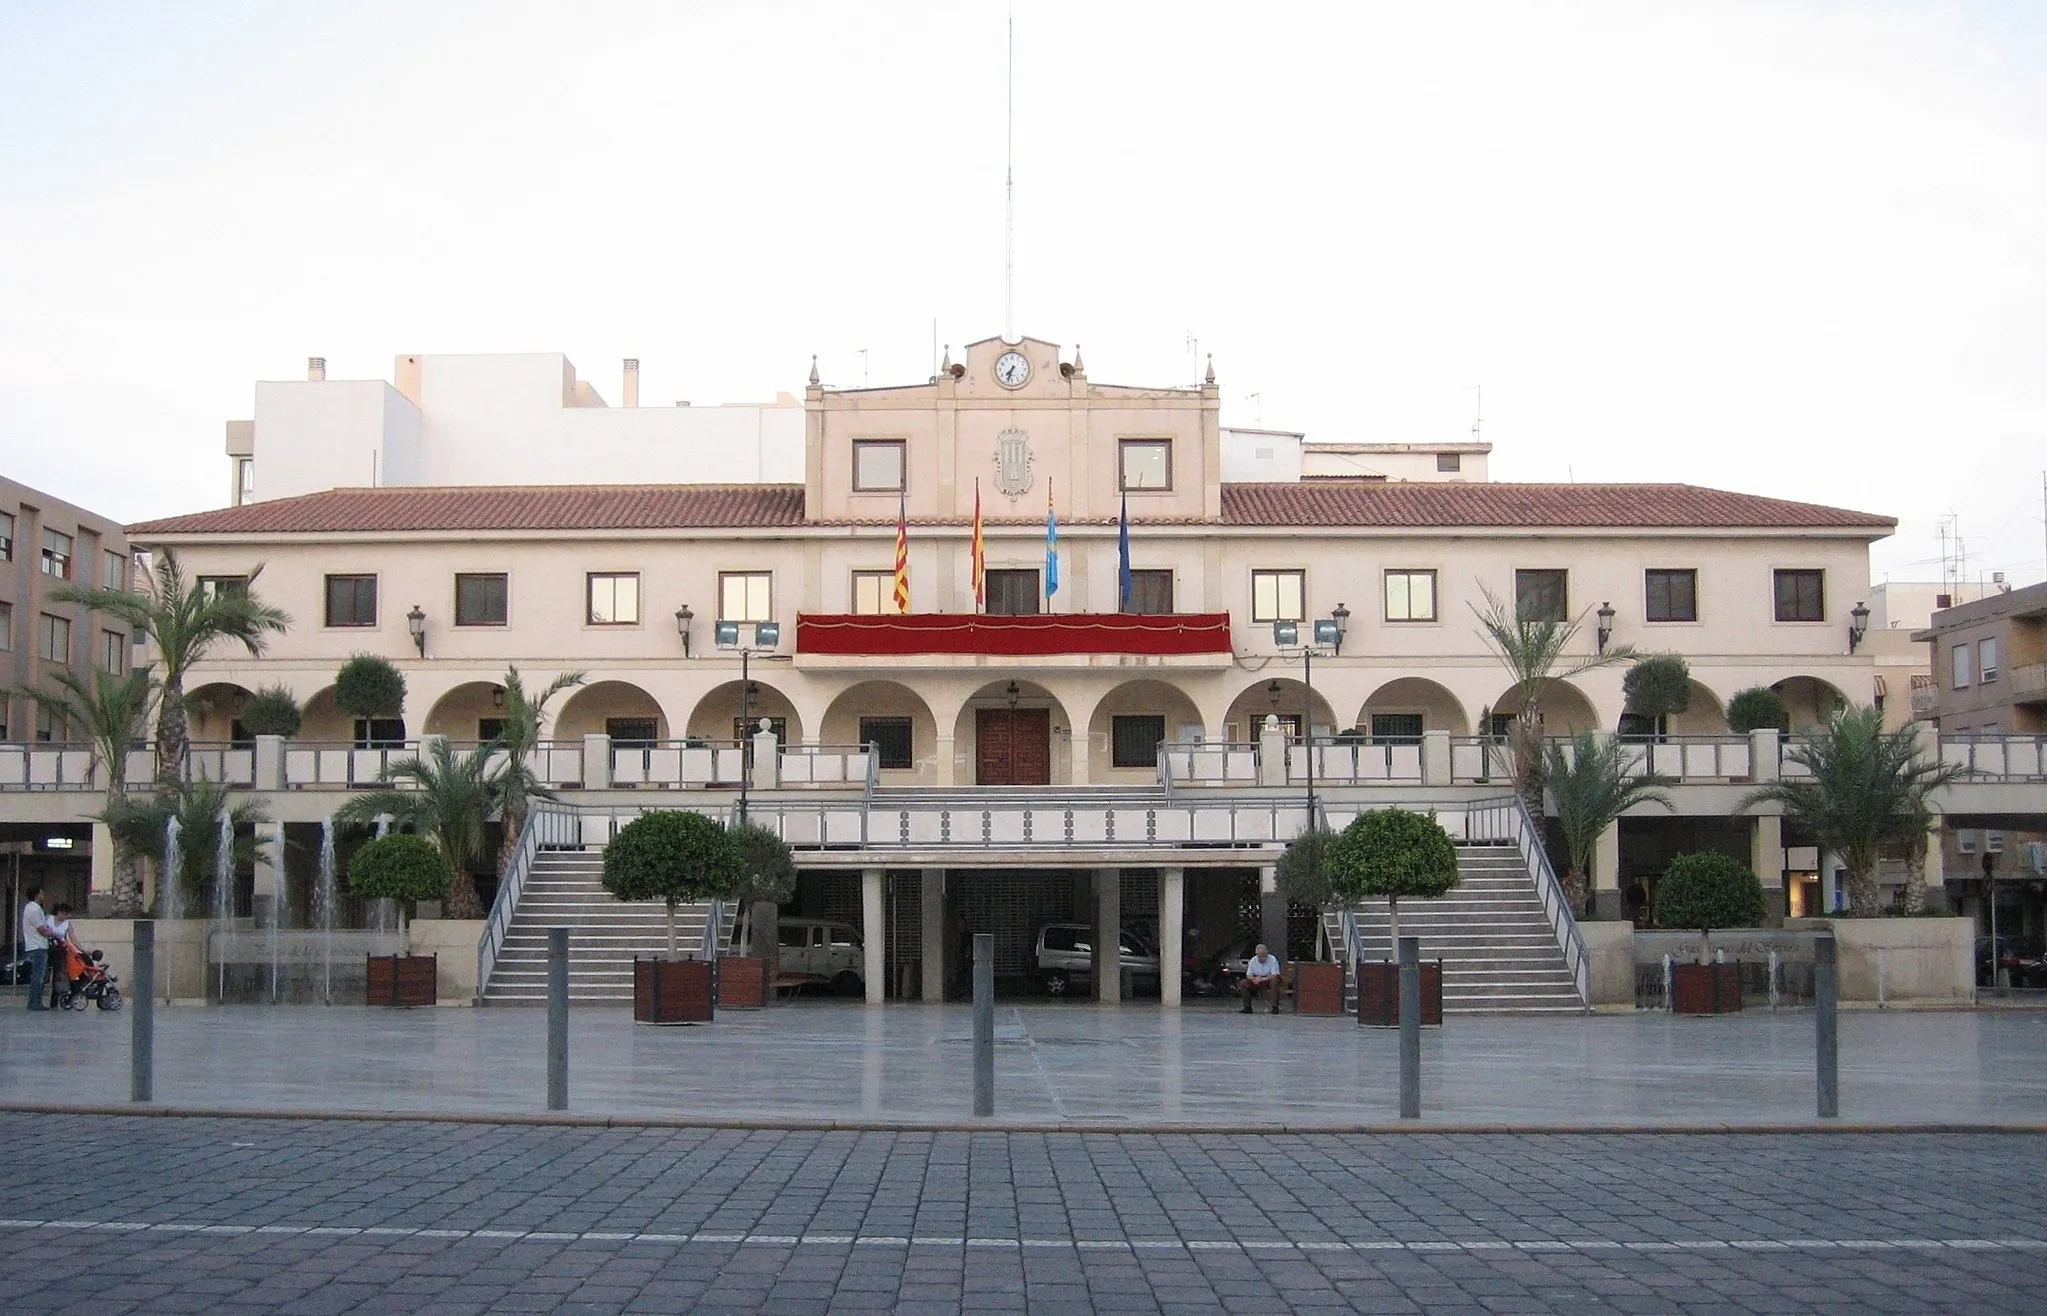 Photo showing: Vista del Ayuntamiento de Guardamar del Segura (Alicante, España).

Autor: Rodriguillo
Fecha: 15/10/2006